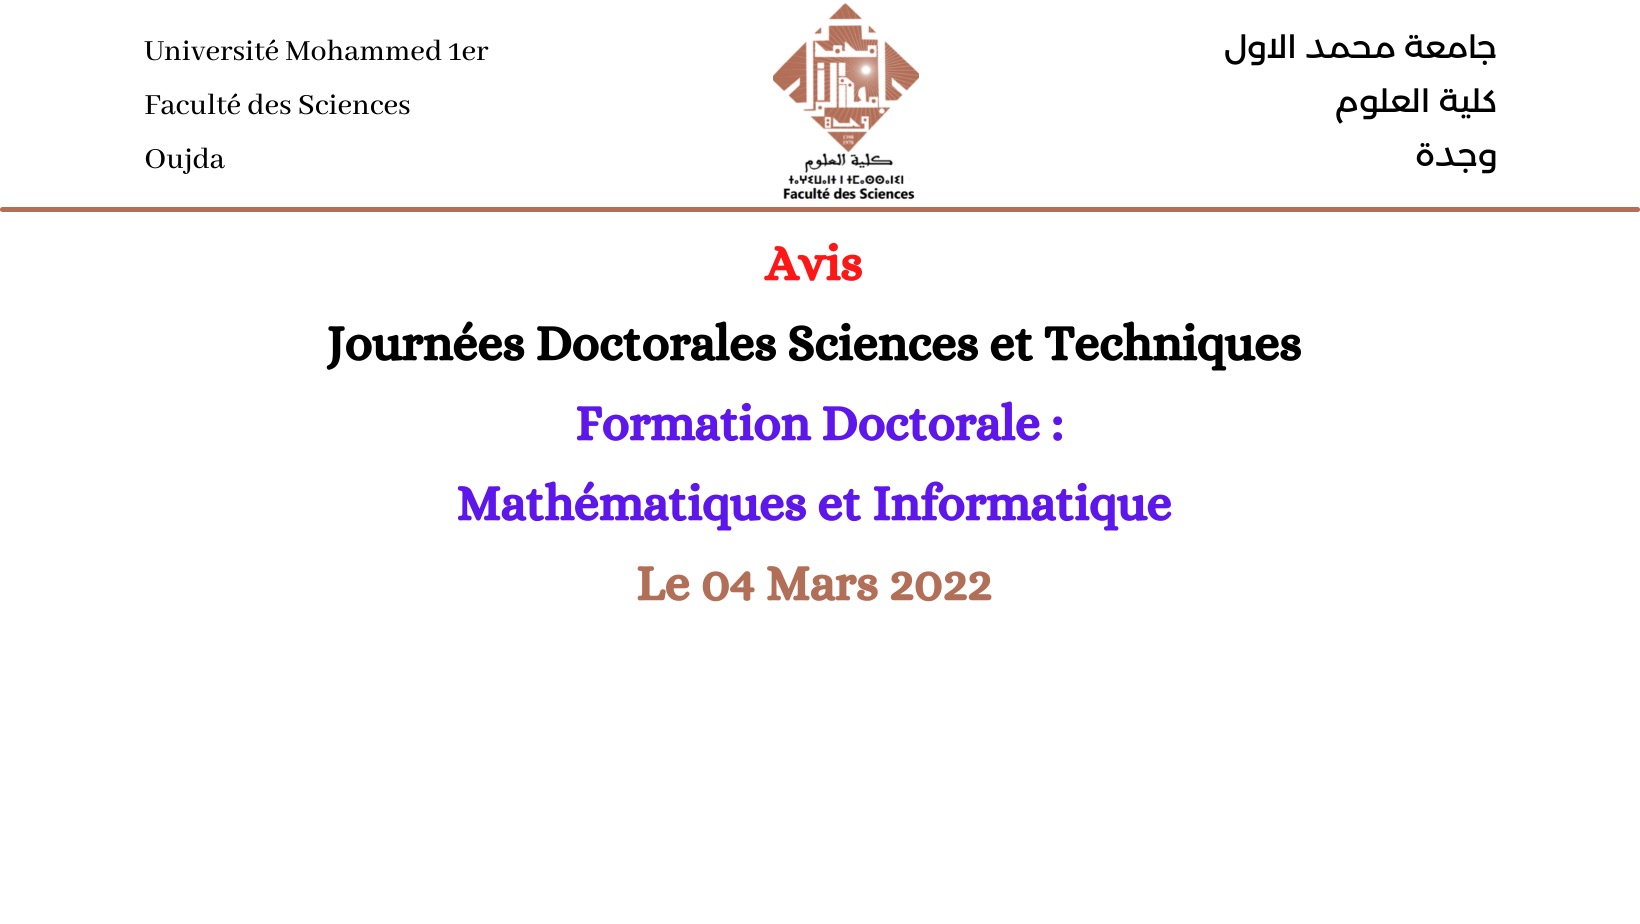 Journées Doctorales Sciences et Techniques (Formation Doctorale : Mathématiques et Informatique)